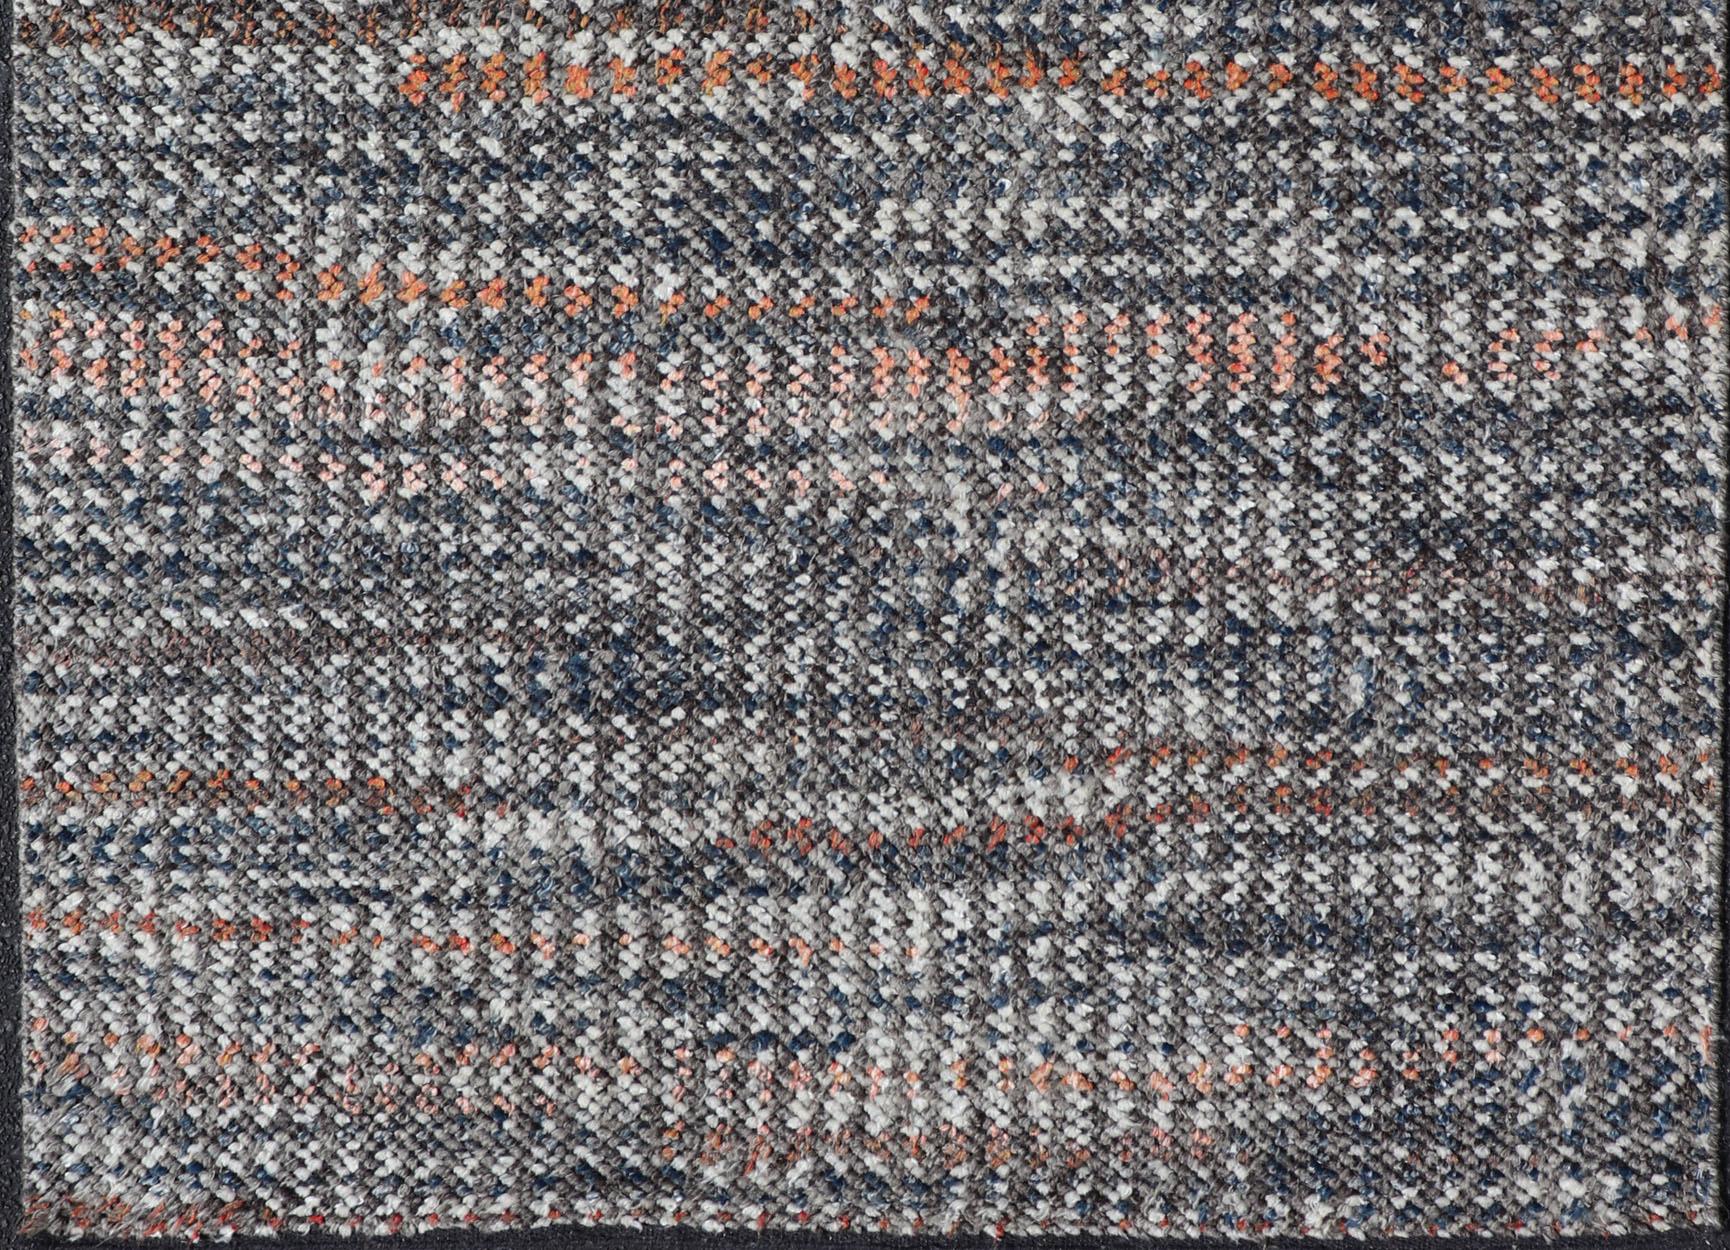 Mesures 4'8 x 9'11 

Cette pièce intéressante présente un champ d'ébène foncé, magnifiquement mélangé avec de l'orange, du rouge, du gris et de la crème. Comme beaucoup de tapis modernes, cette pièce n'a pas de bordure. Les fabricants de tapis de